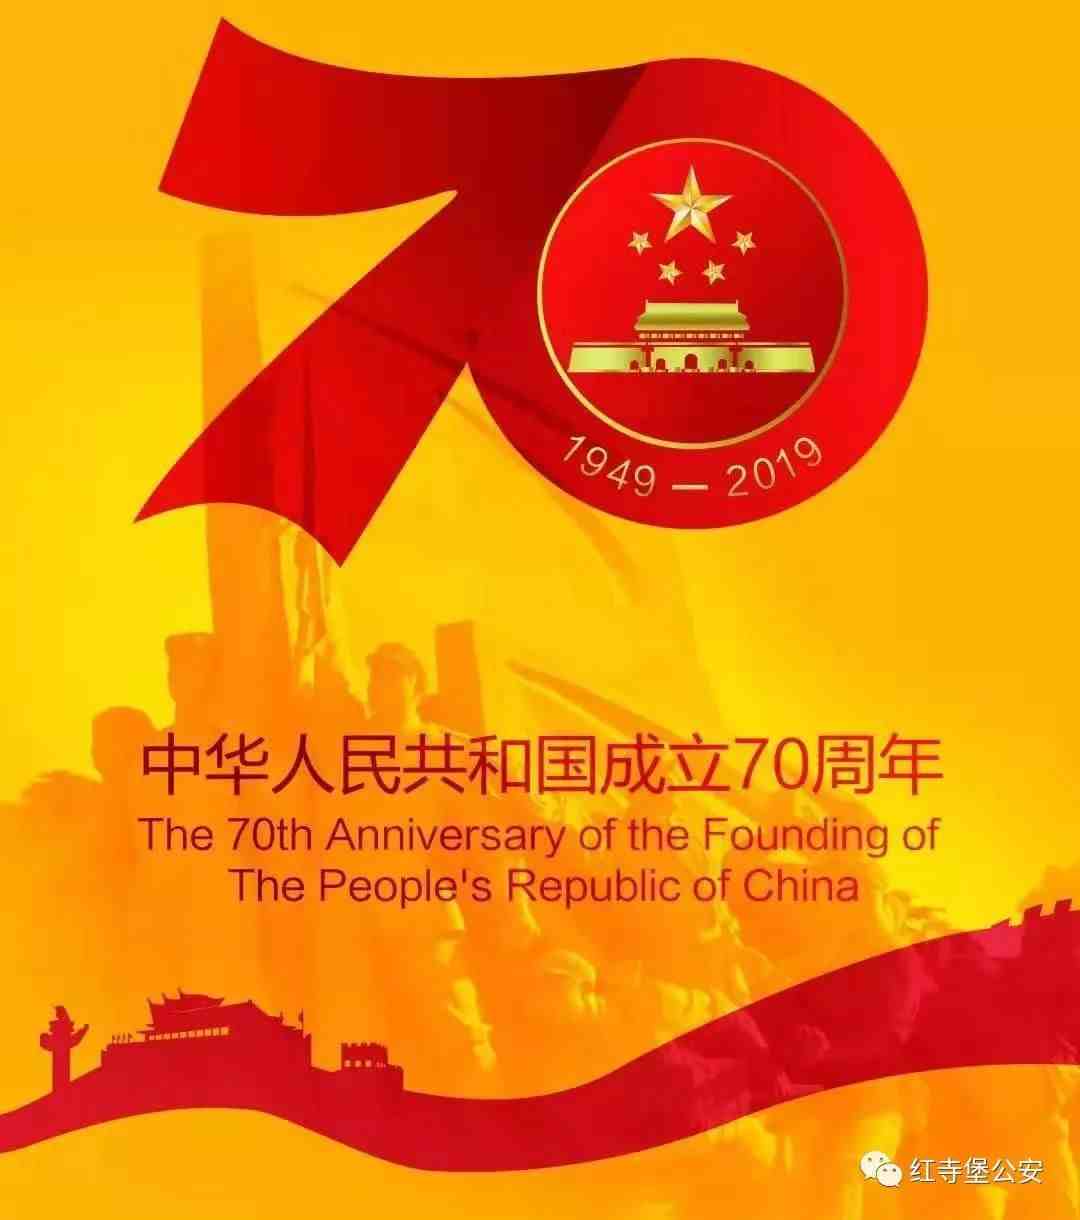 庆祝中华人民共和国成立70周年的宣传标语口号供你选~